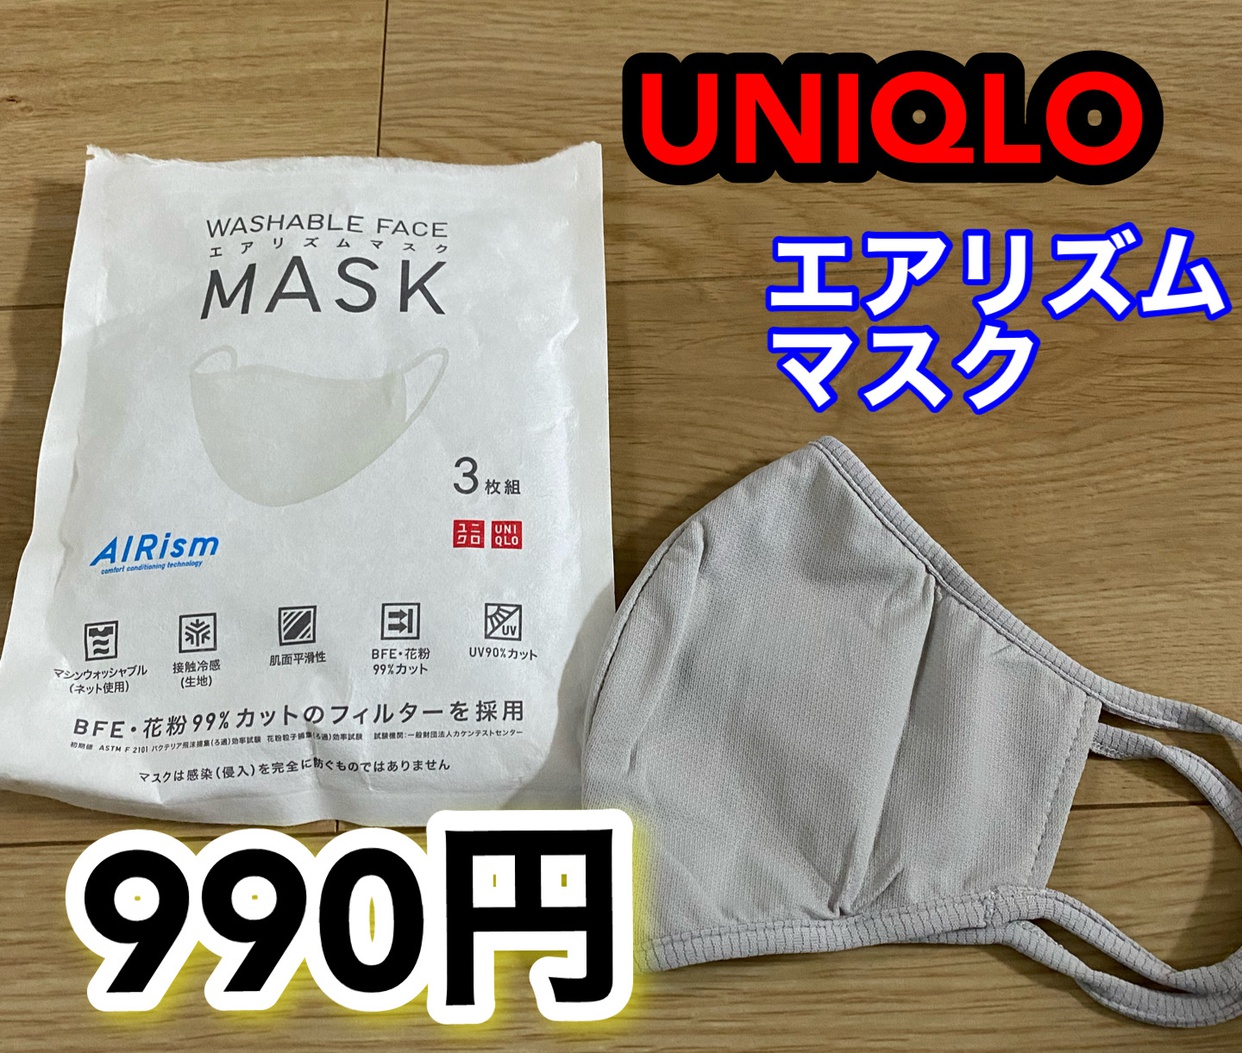 UNIQLO(ユニクロ) エアリズムマスクの気になる点・悪い点・デメリットに関するkimiさんの口コミ画像1